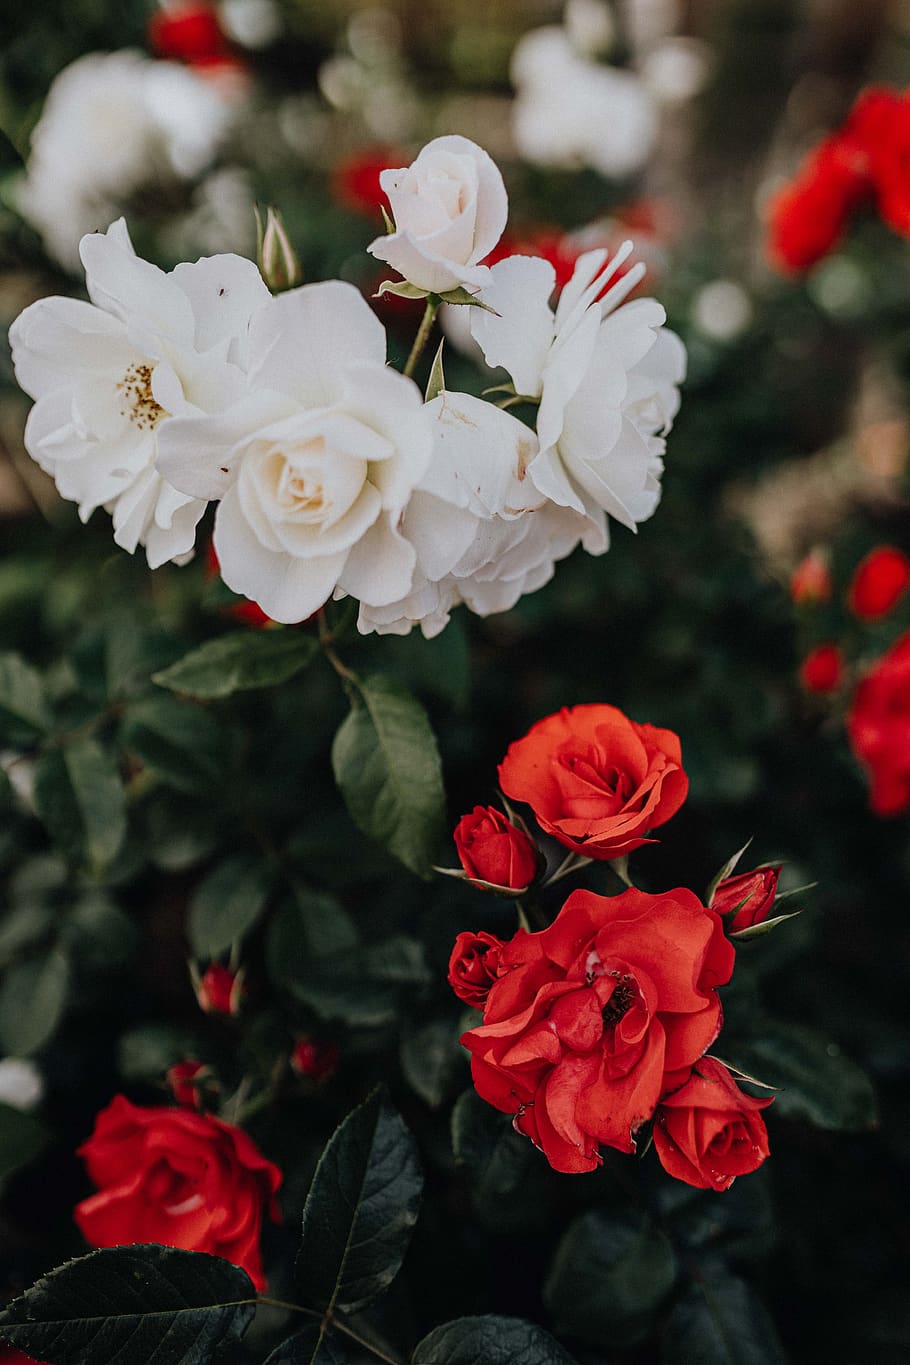 mawar, bunga, merah, putih, tanaman, taman, kelopak, Indah, Sorrento, Italia